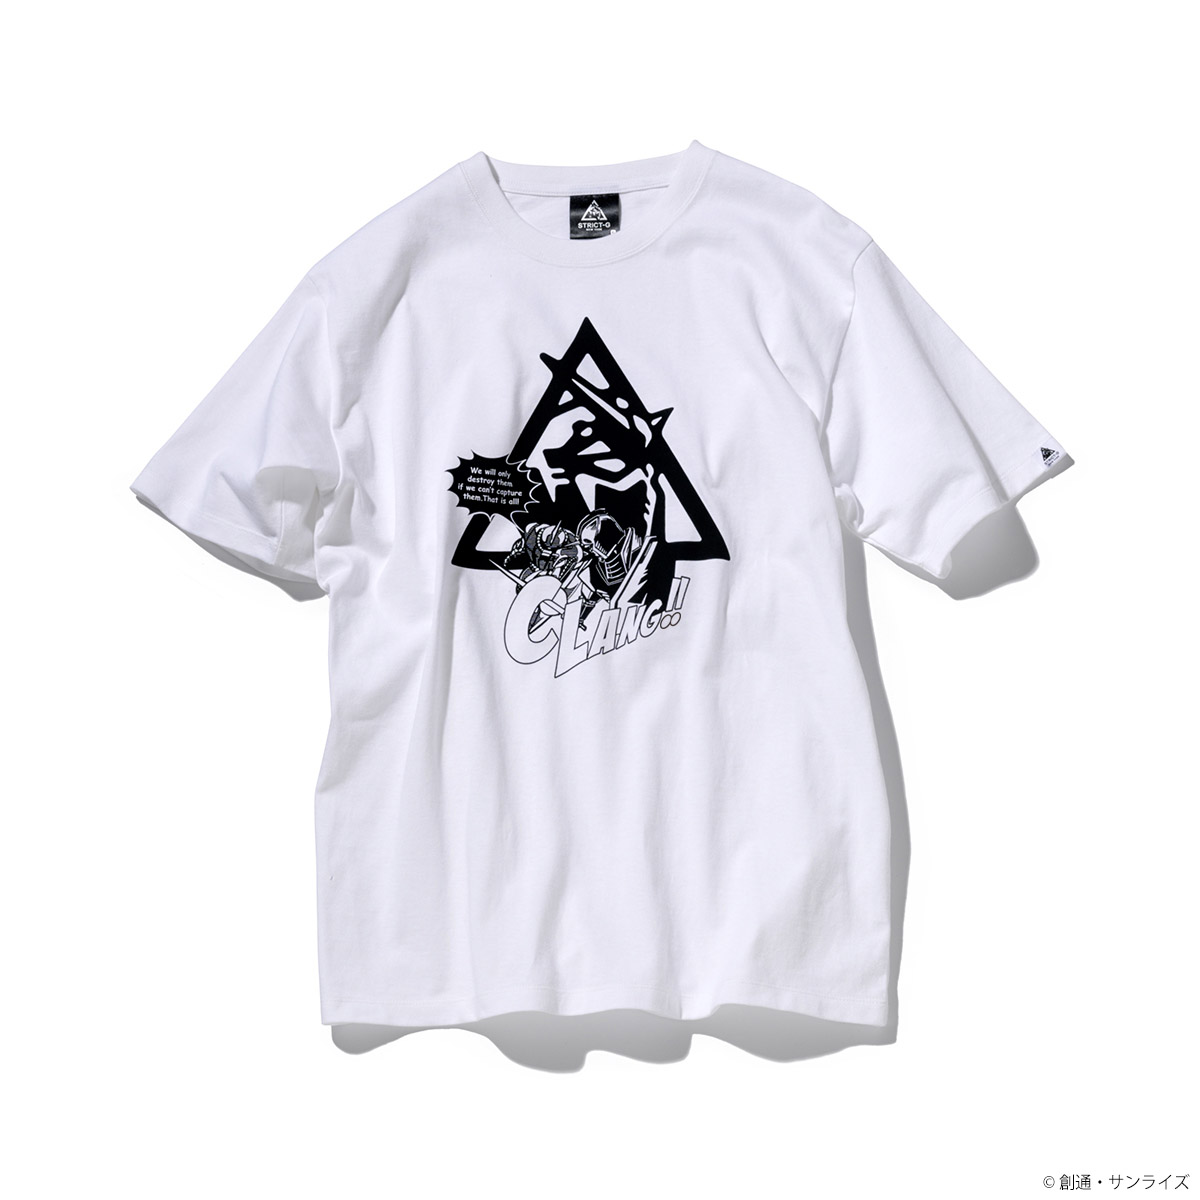 STRICT-G NEW YARK Tシャツ  トライアングルロゴコミック柄